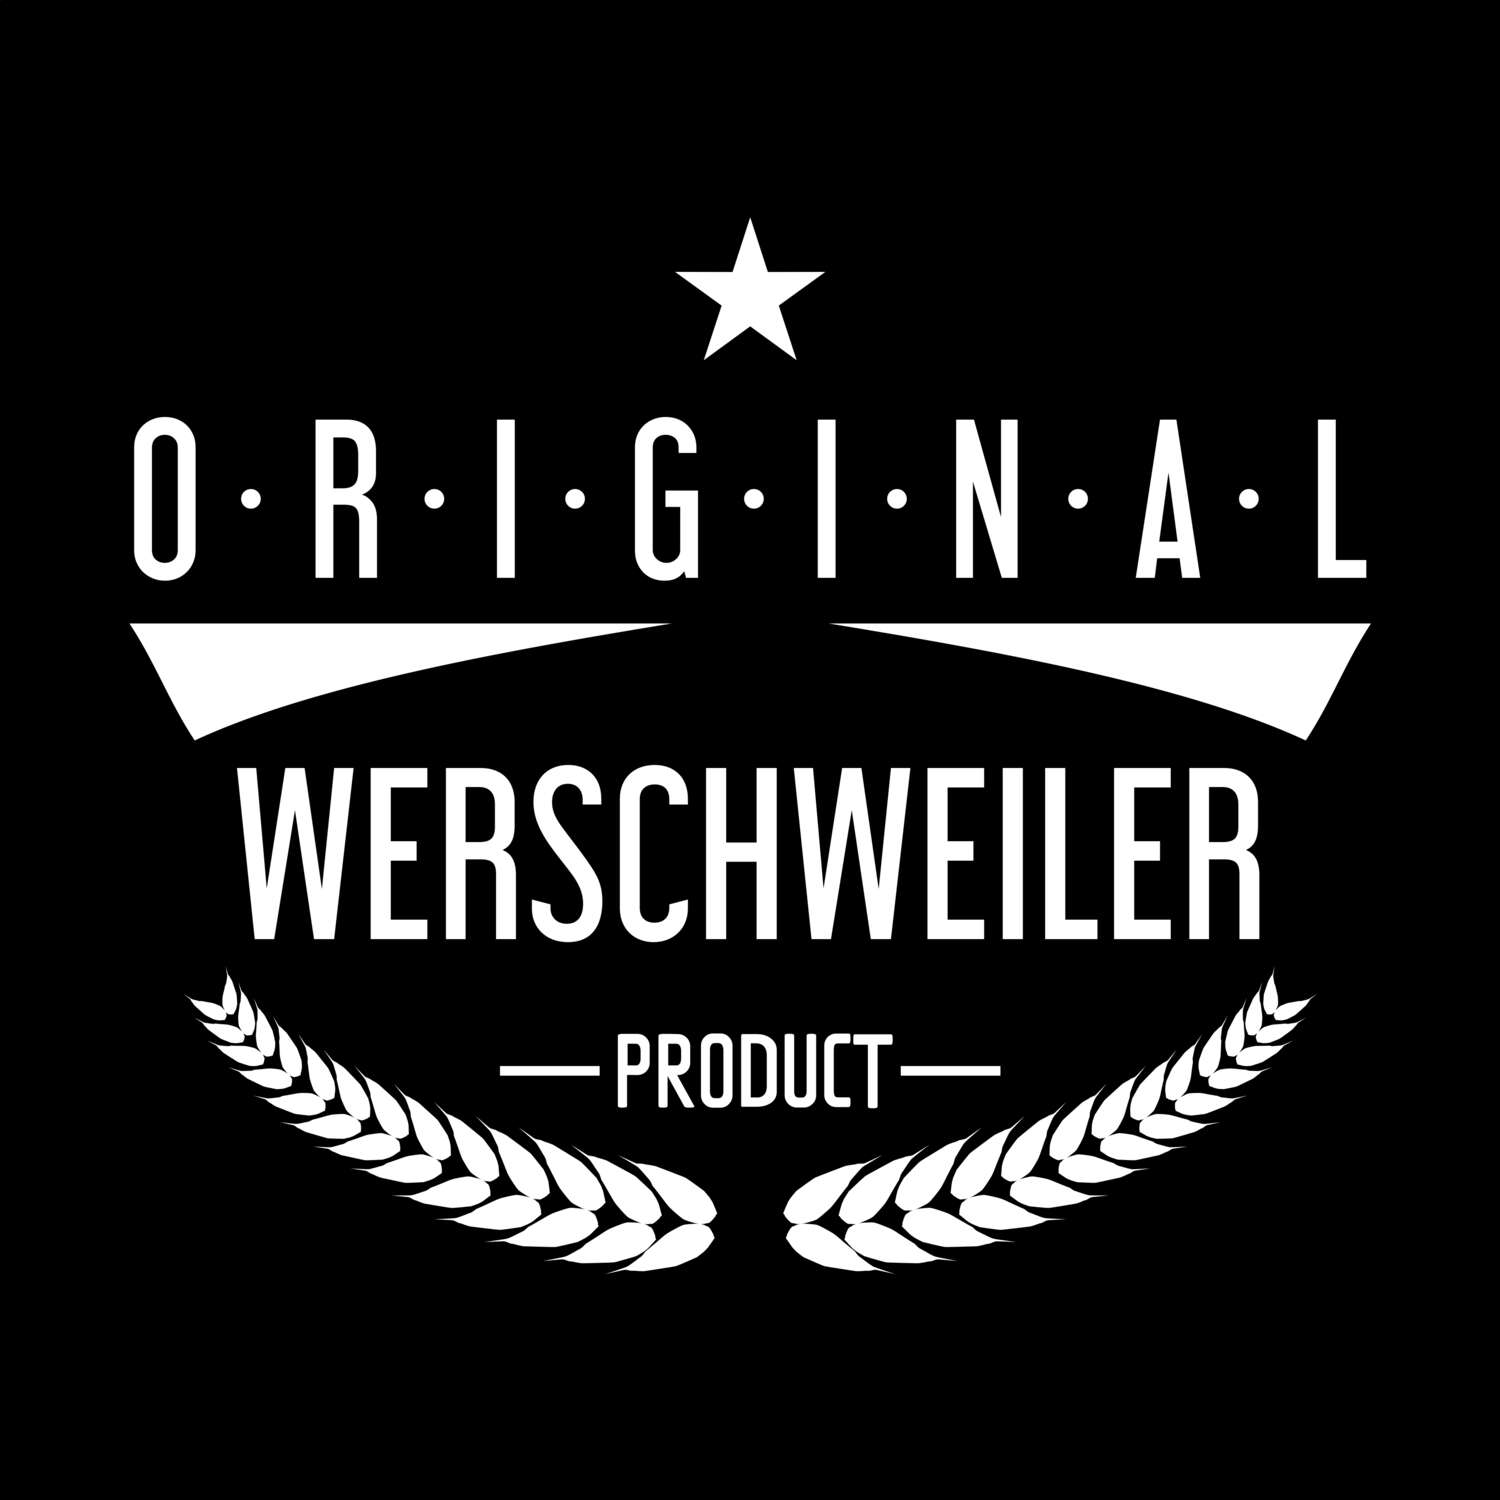 Werschweiler T-Shirt »Original Product«